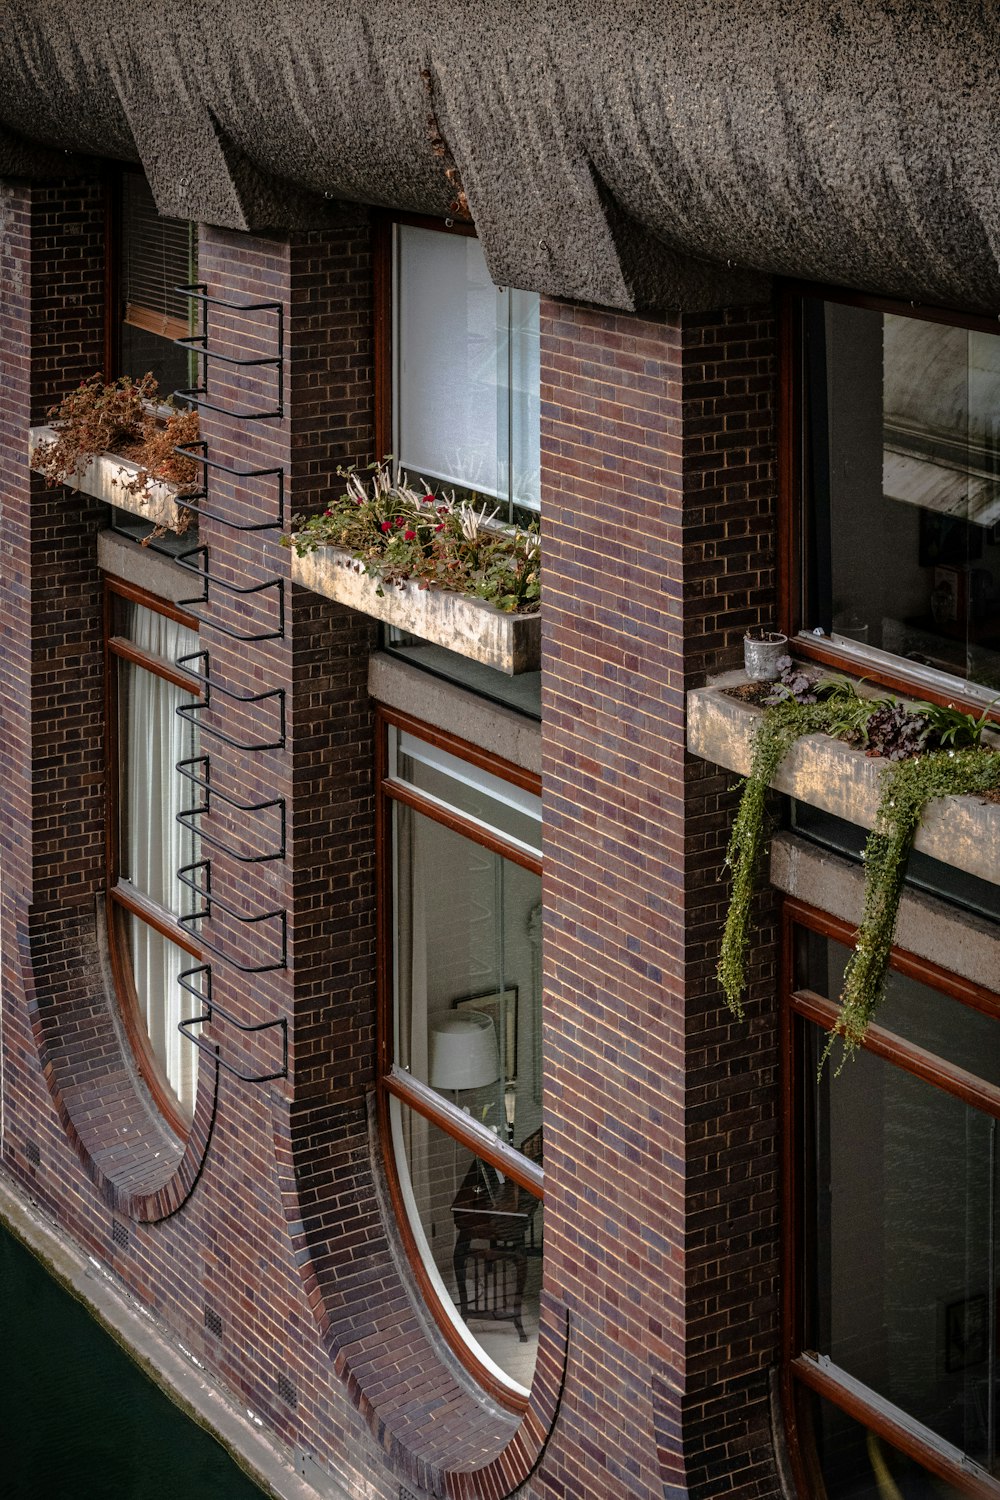 Un edificio de ladrillo con plantas en las ventanas